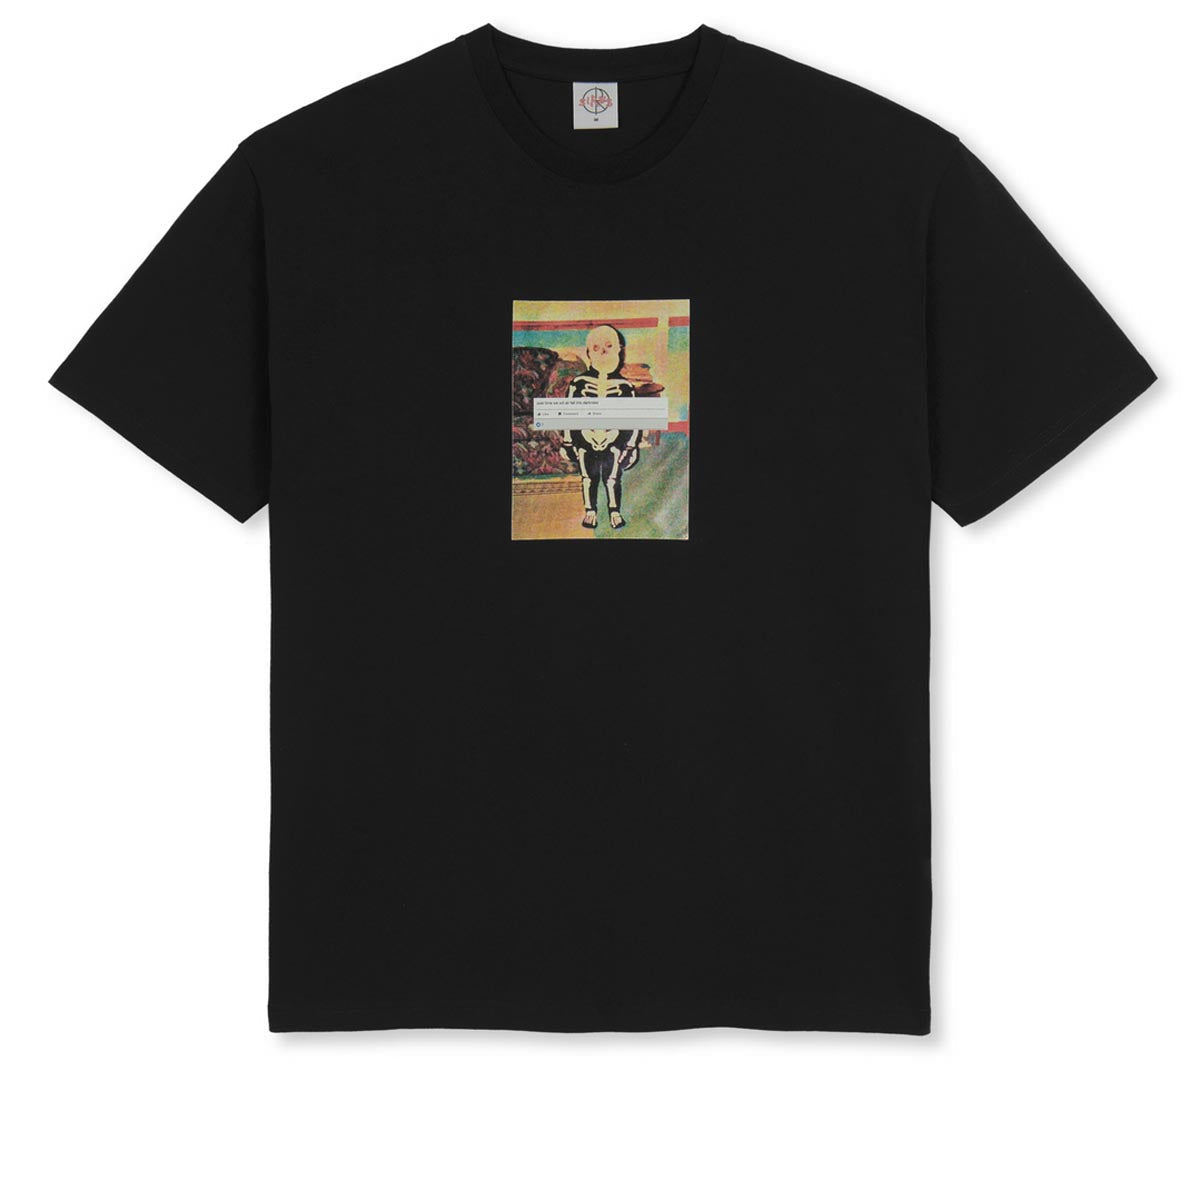 Polar Skeleton Kid T-Shirt - Black image 1